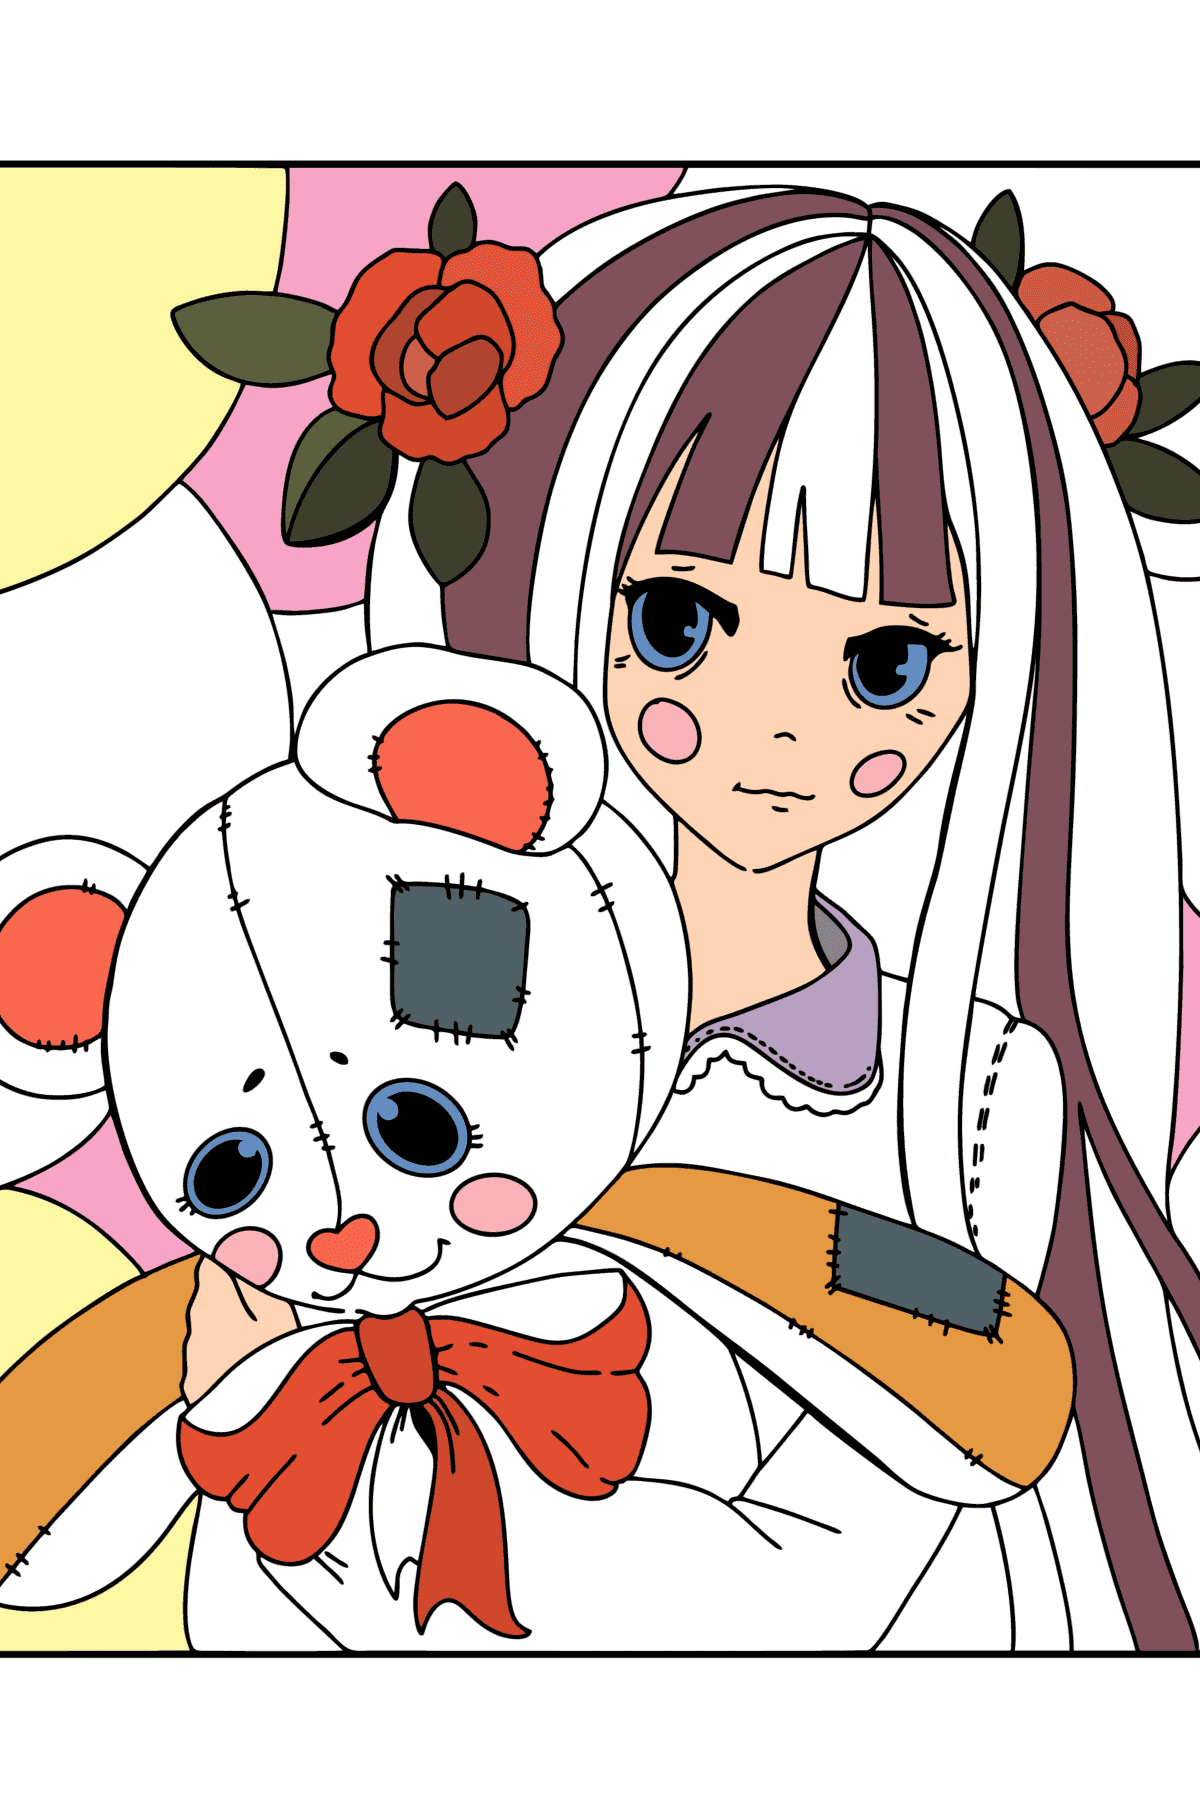 Раскраска Аниме девушка с плюшевым мишкой - Картинки для Детей